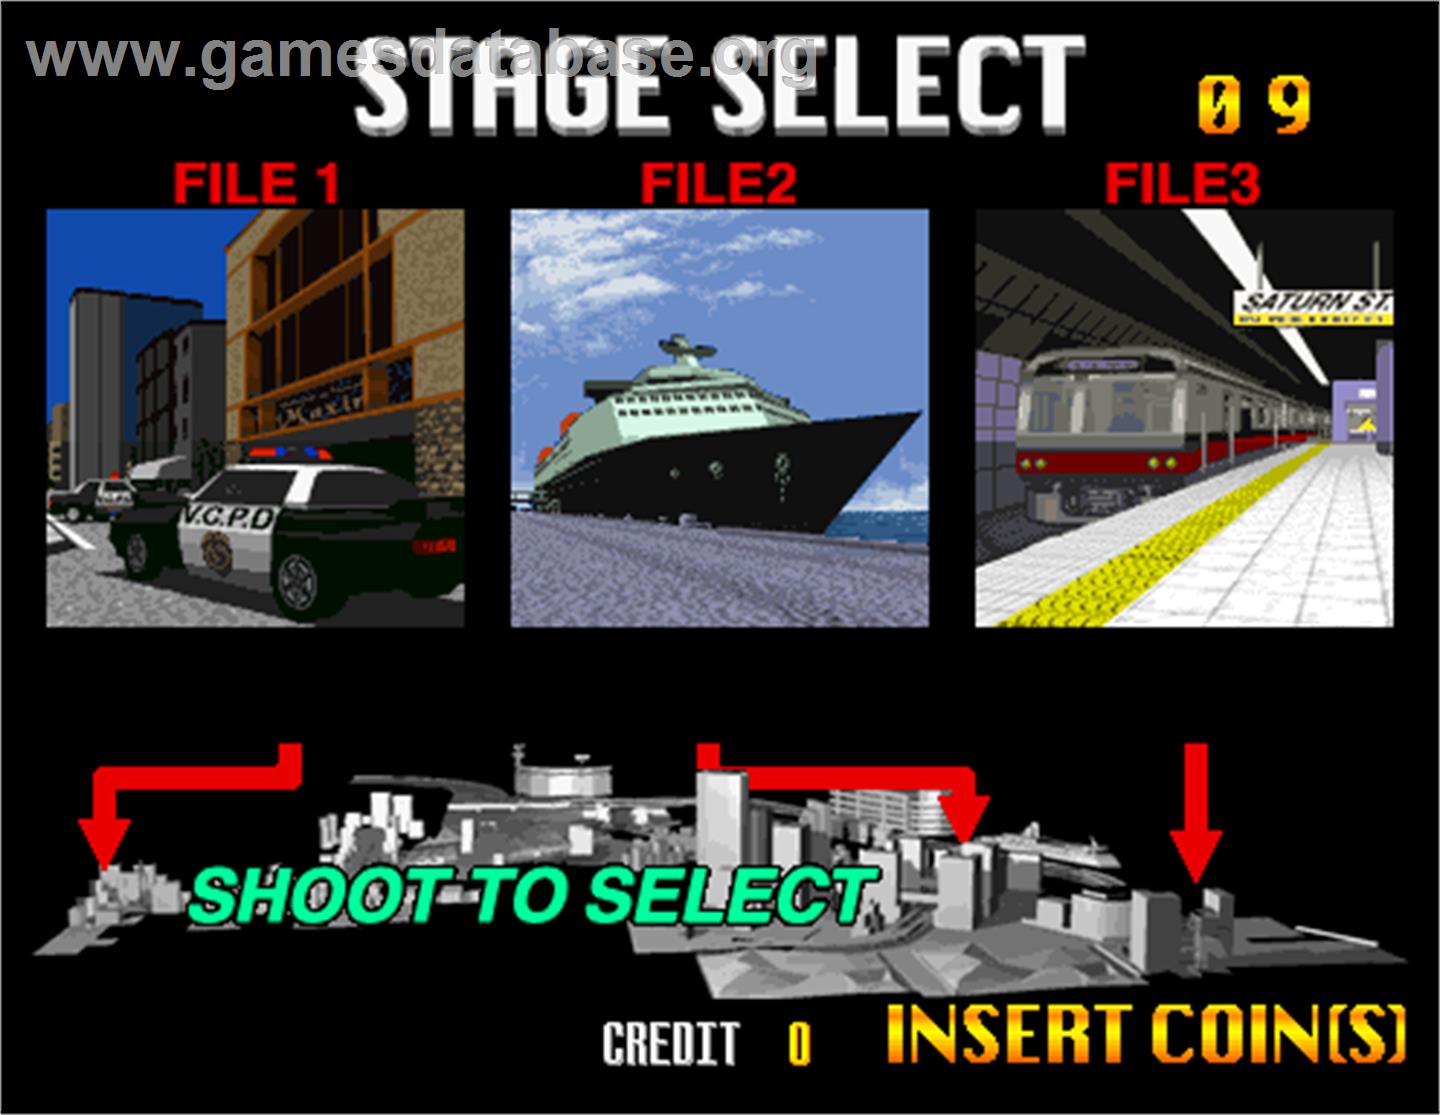 Virtua Cop 2 - Arcade - Artwork - Select Screen